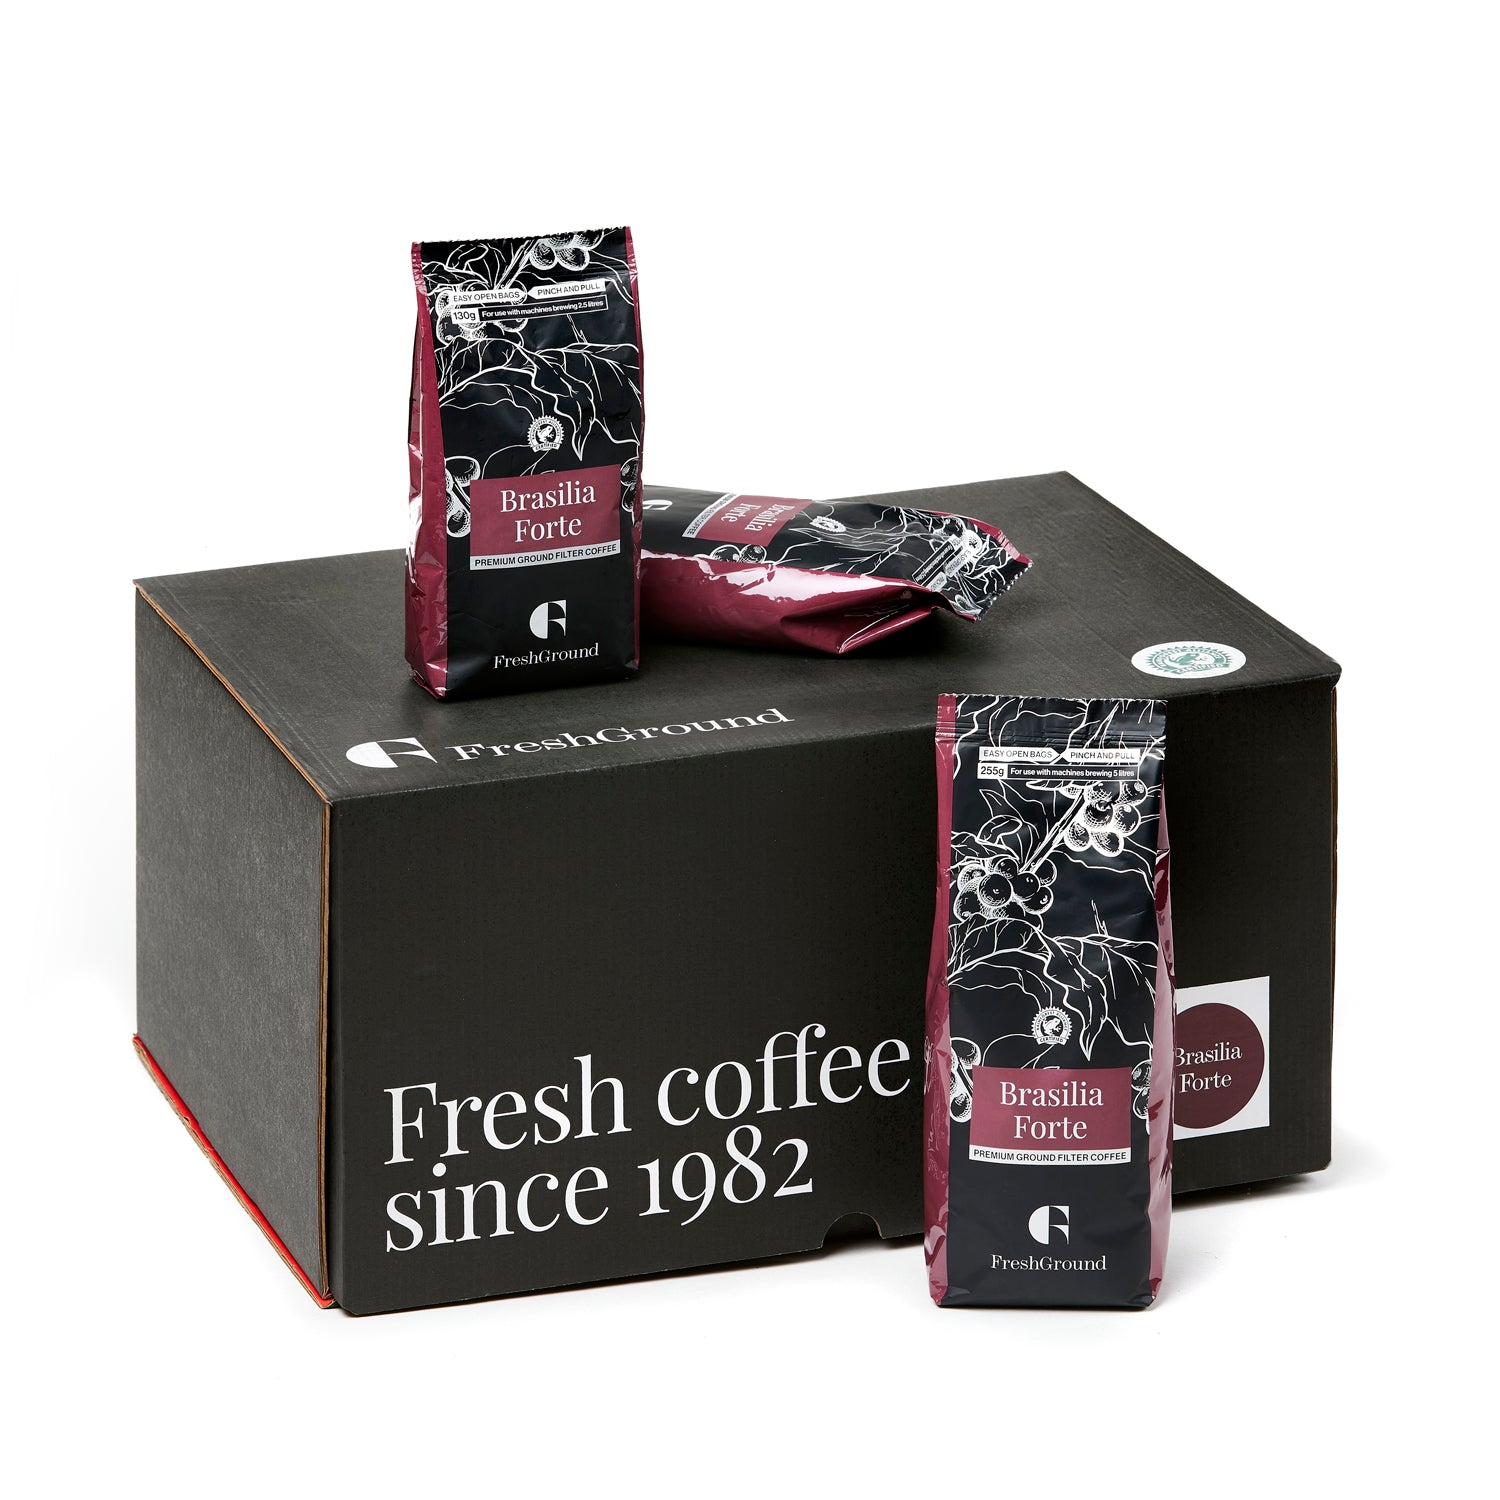 Brasilia Forte Premium Filter Coffee - FreshGround